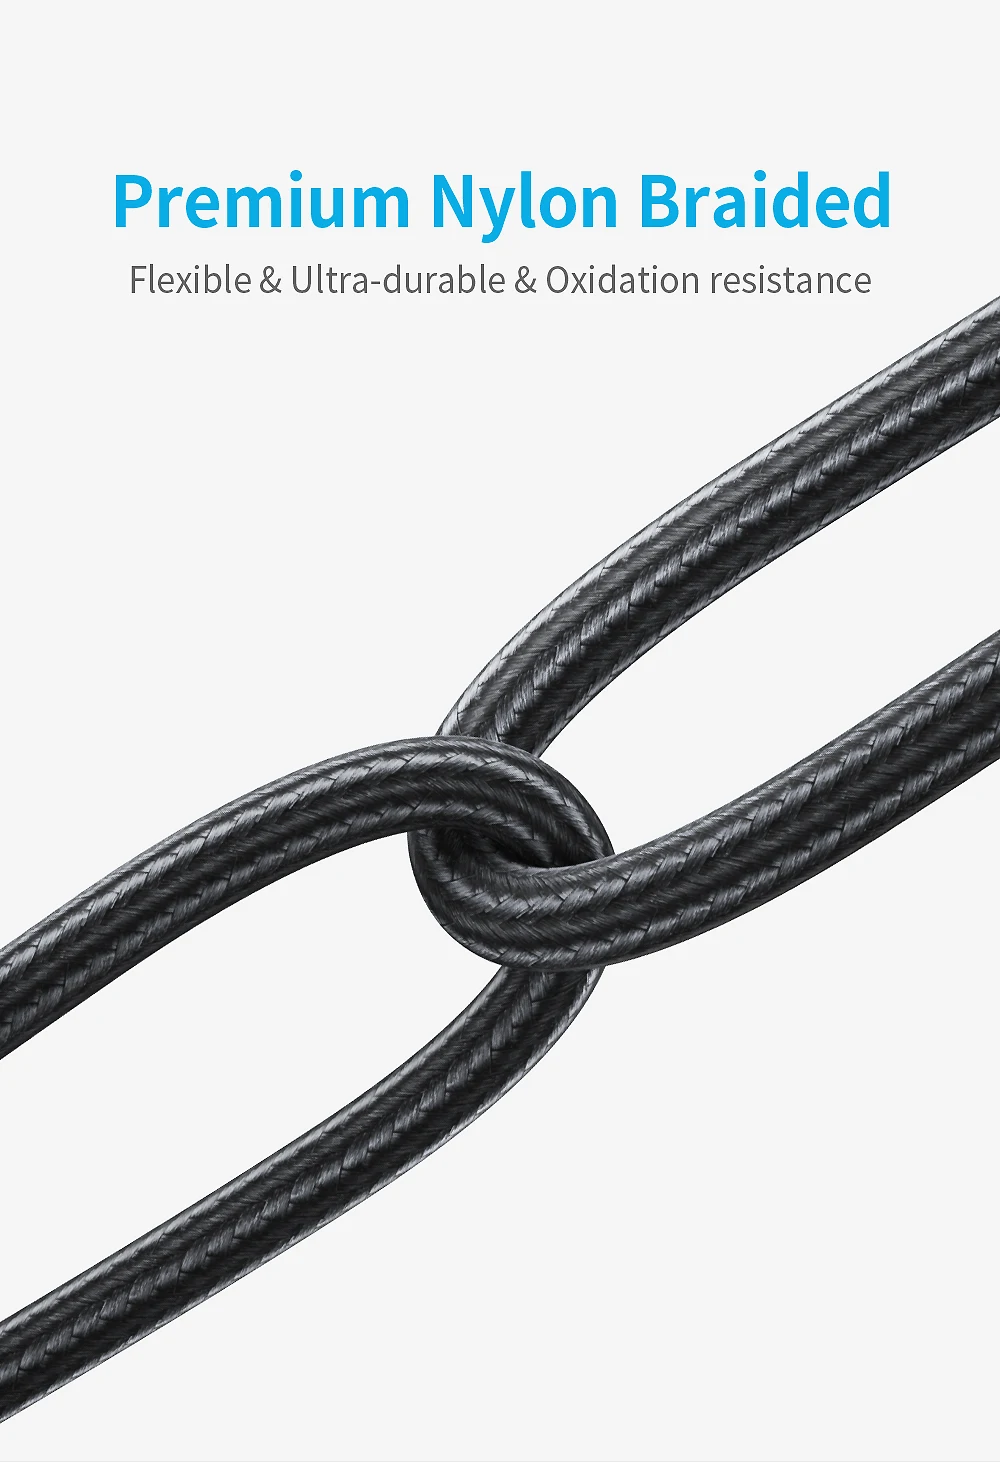 CXV USB нейлоновый кабель type-C для samsung S10 S9 Xiaomi Redmi Note 7 Быстрая зарядка для huawei зарядное устройство для мобильного телефона usb type-C кабель